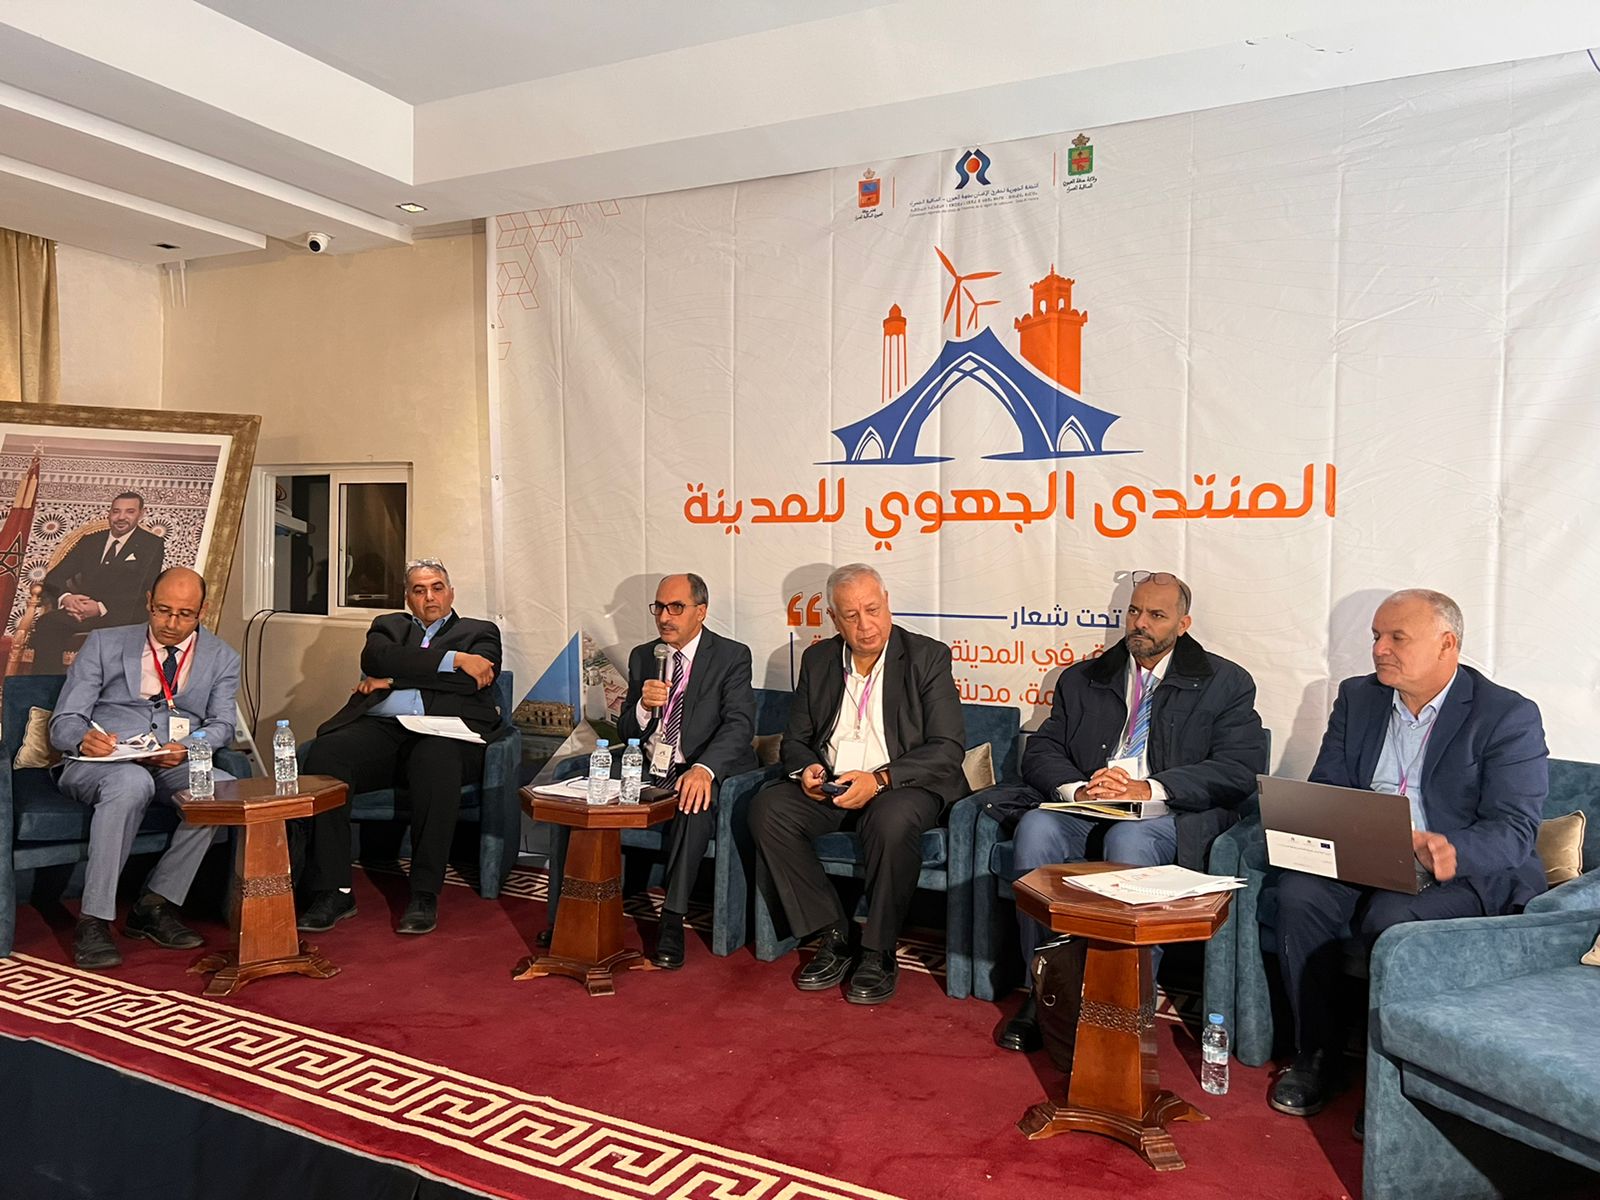 افتتاح اشغال المنتدى الجهوي للمدينة بمدينة العيون